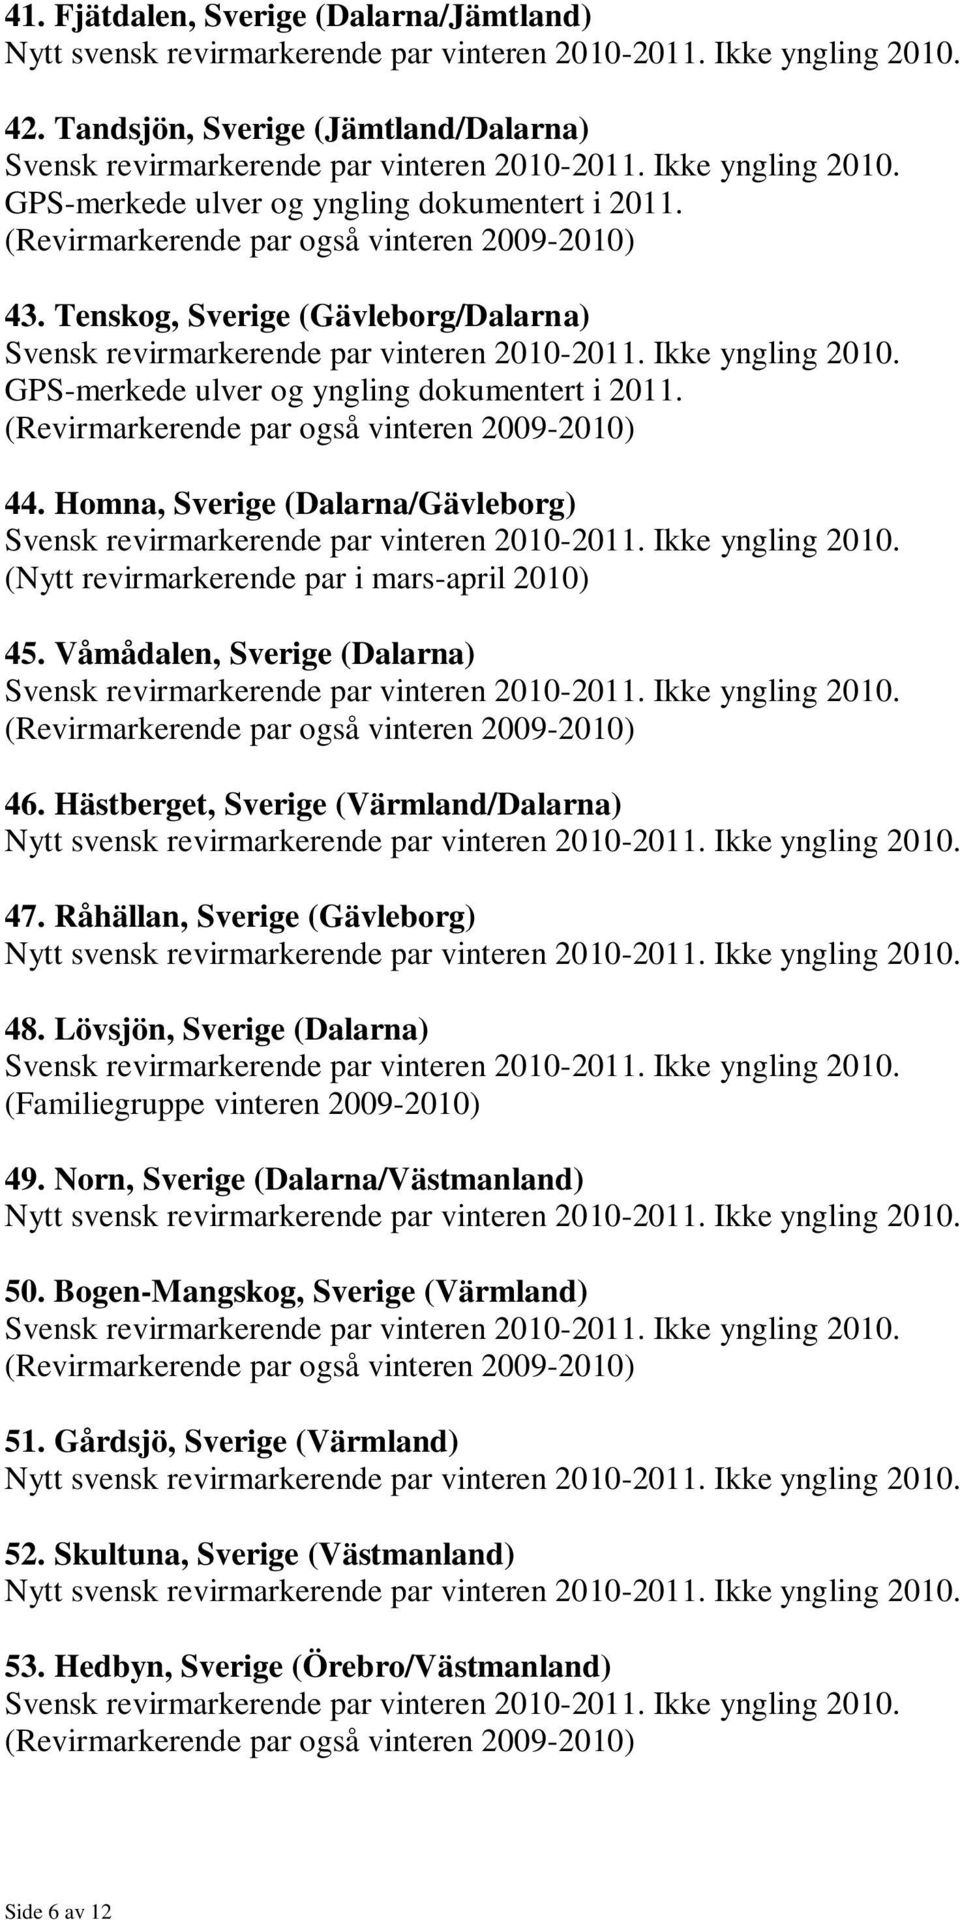 Homna, Sverige (Dalarna/Gävleborg) (Nytt revirmarkerende par i mars-april 2010) 45. Våmådalen, Sverige (Dalarna) 46. Hästberget, Sverige (Värmland/Dalarna) 47.